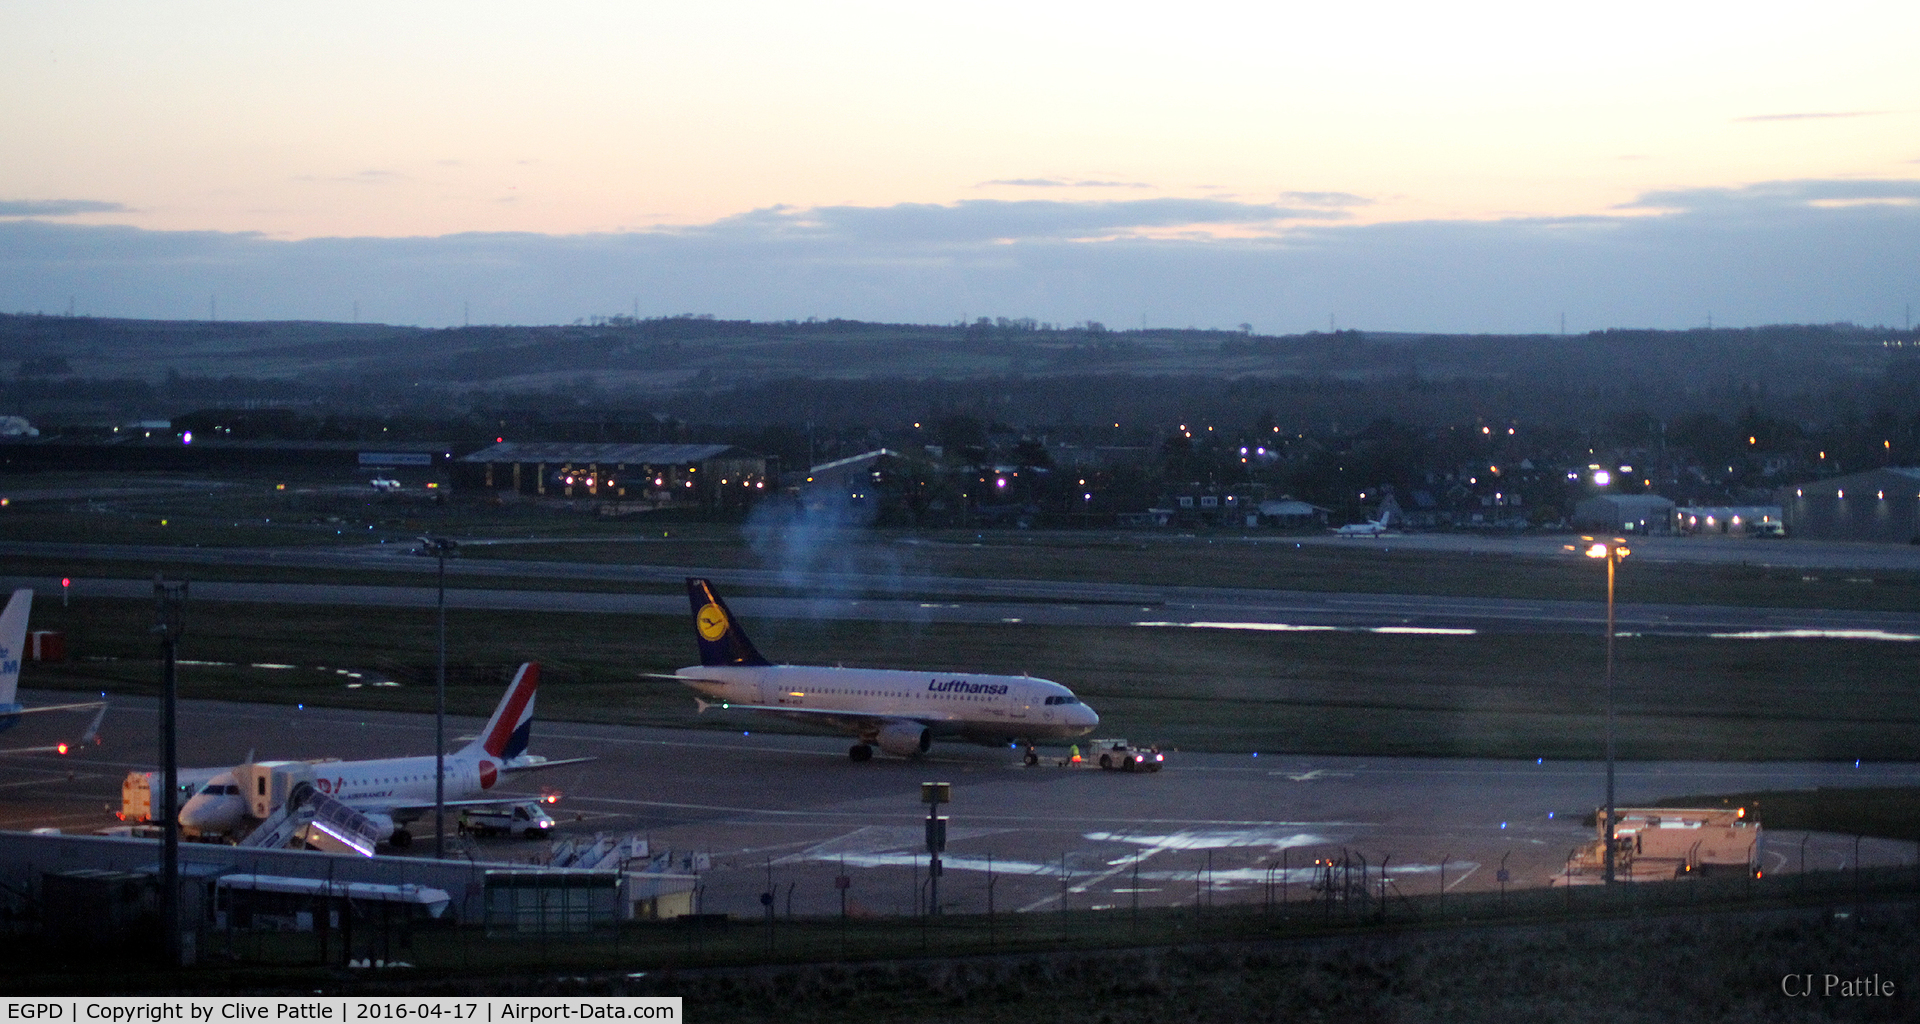 Aberdeen Airport, Aberdeen, Scotland United Kingdom (EGPD) - Dusk view at Aberdeen EGPD